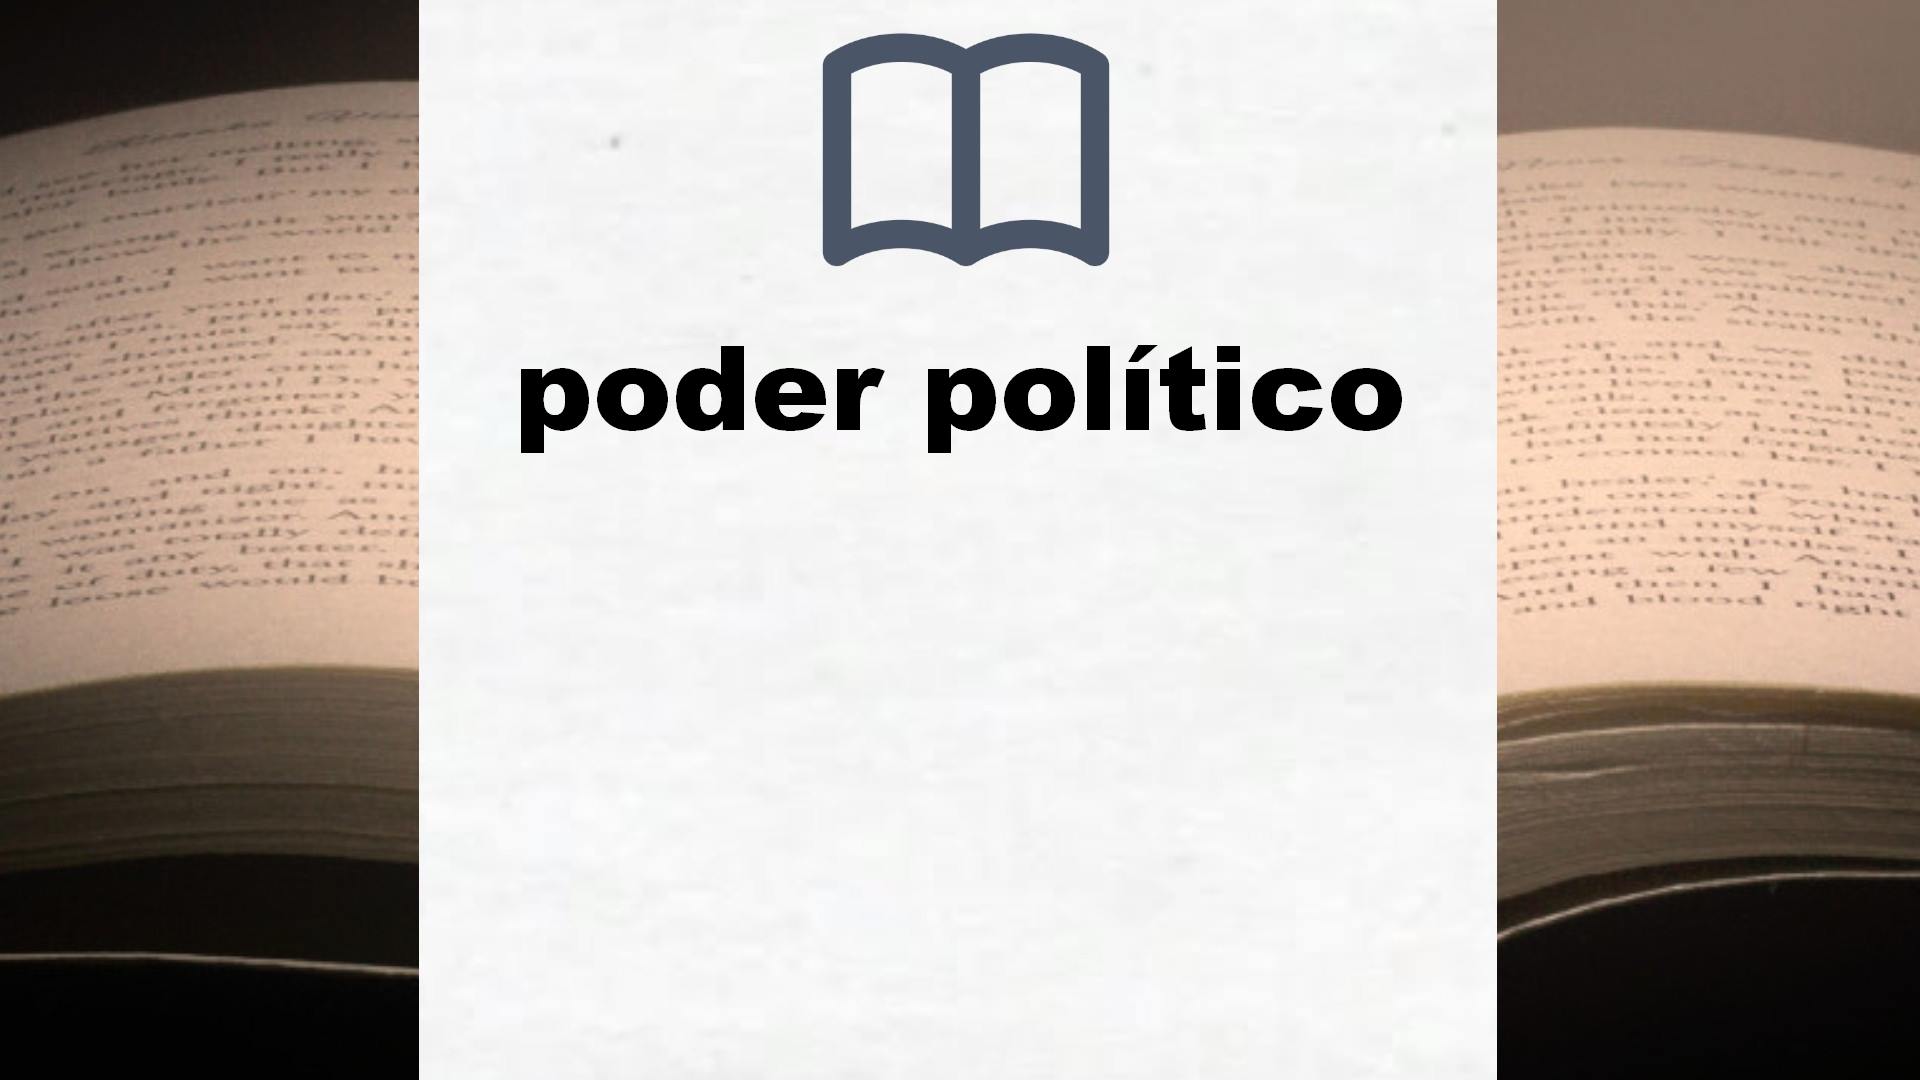 Libros sobre poder político